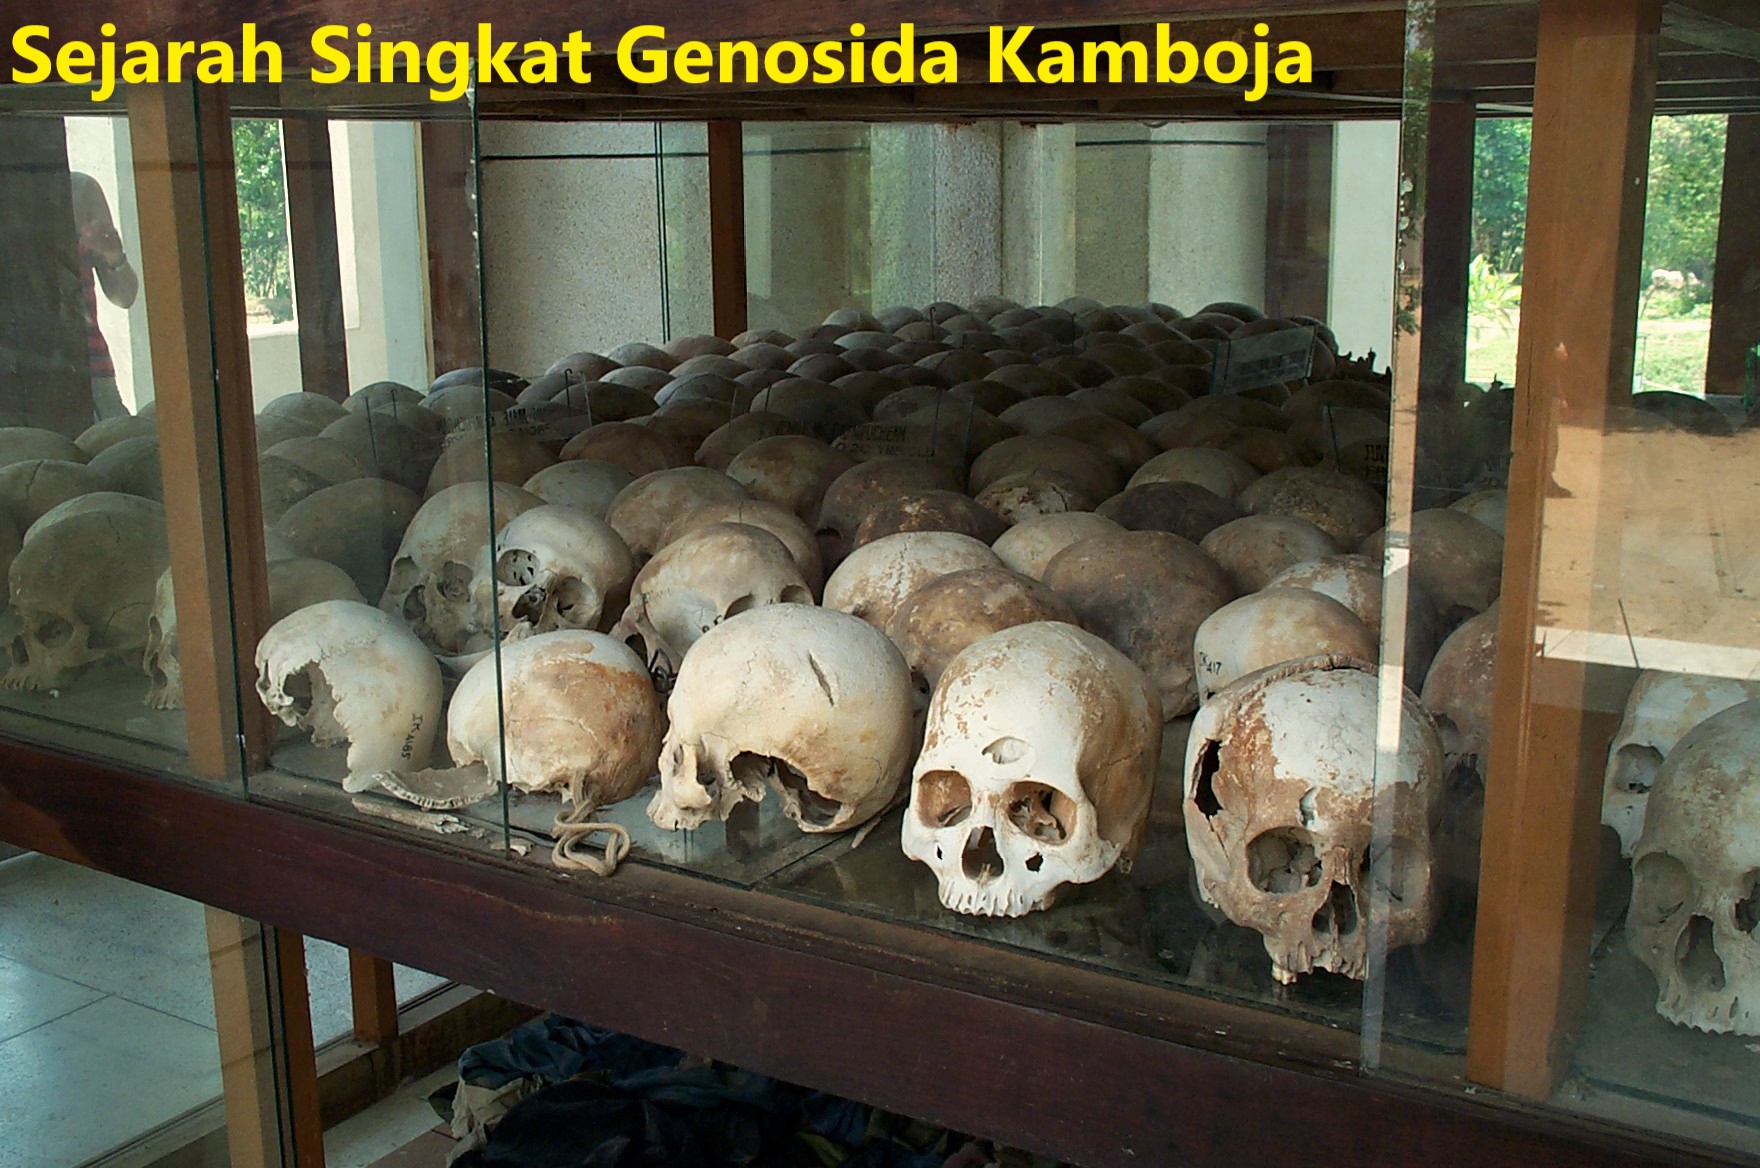 Sejarah Singkat Genosida Kamboja